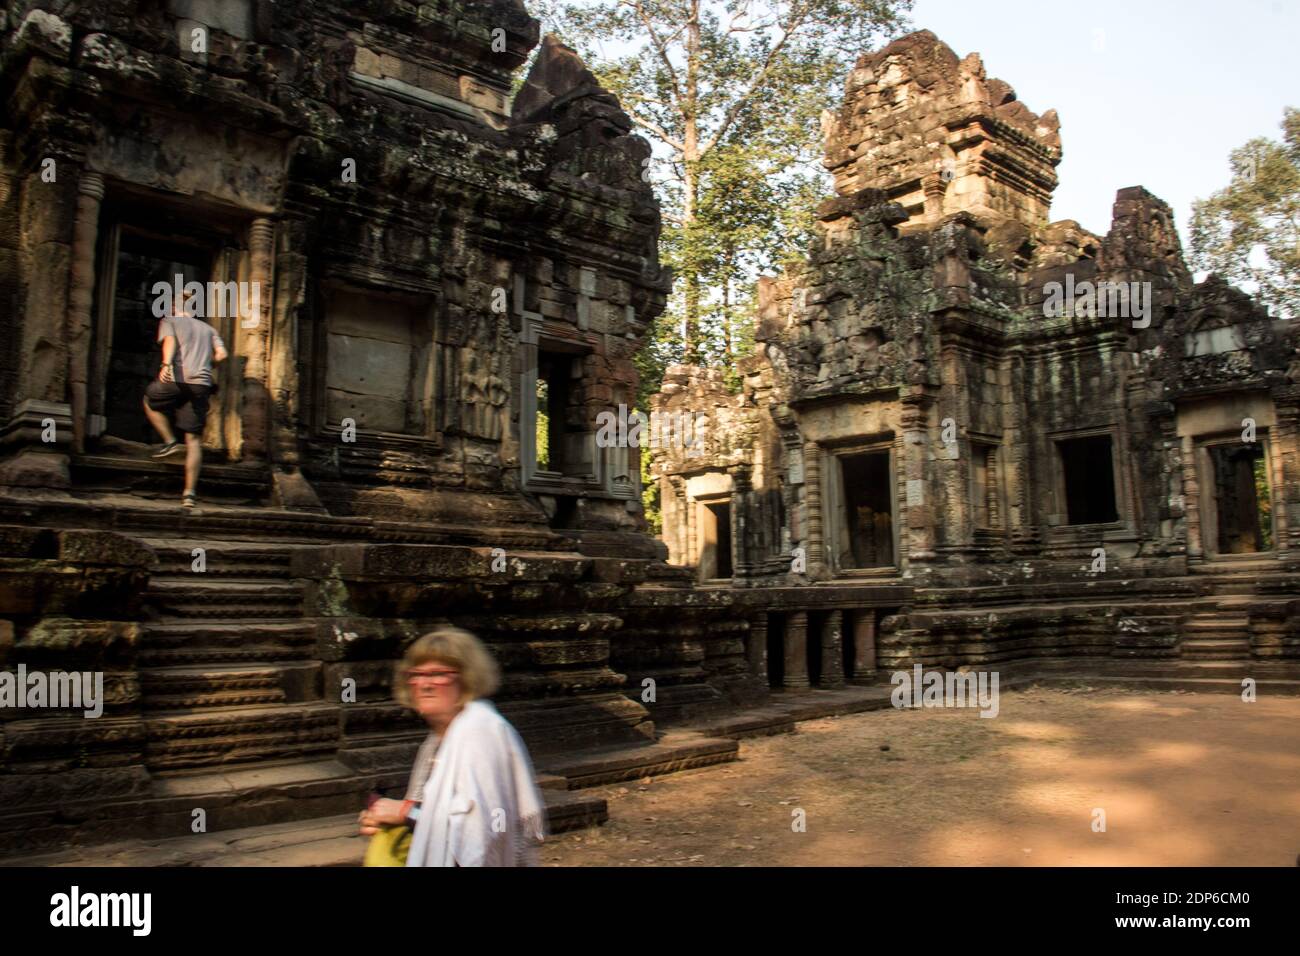 KHM - SOCIÉTÉ - TOURISME AUX TEMPLES DE ANGKOR Avant de devenir une attraction touristique, la cité d’Angkor fut la capitale de l’empire Khmer du IXèm Stock Photo